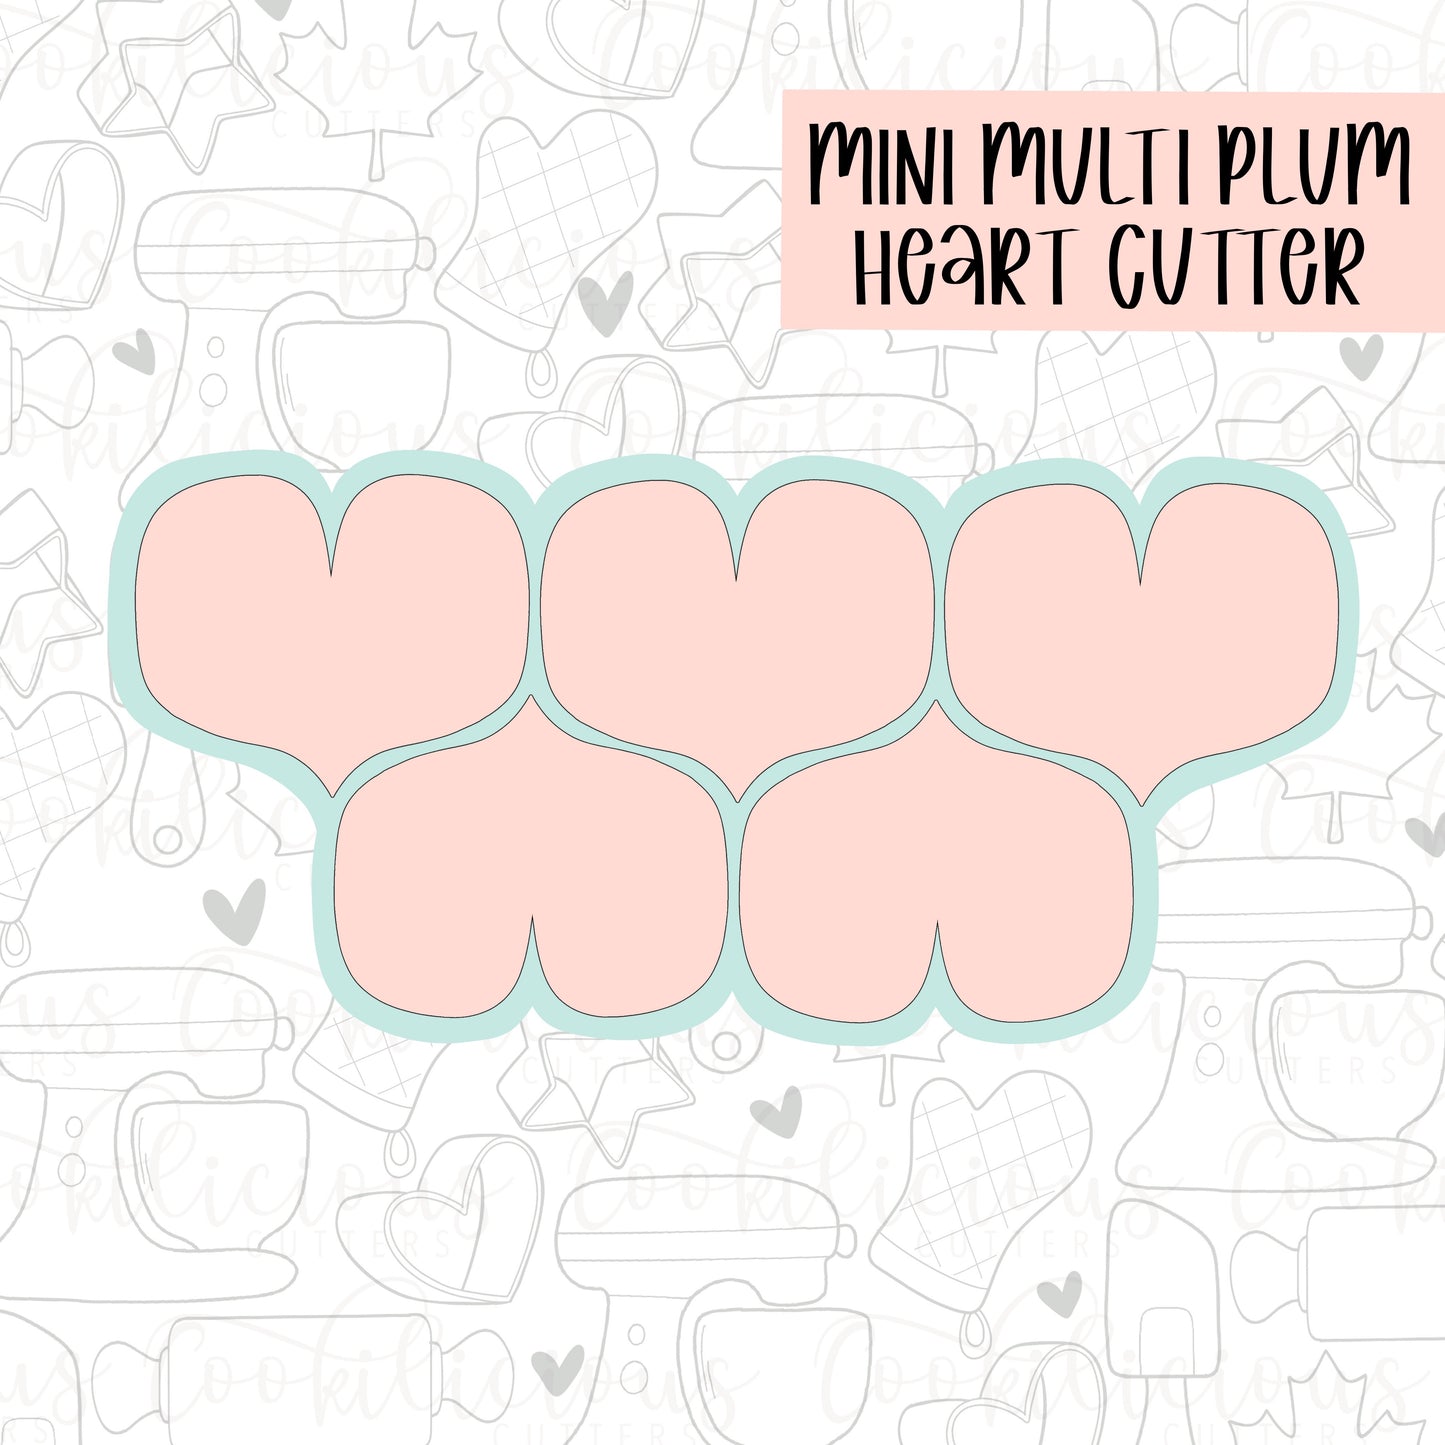 Multi Plump Heart Cutter